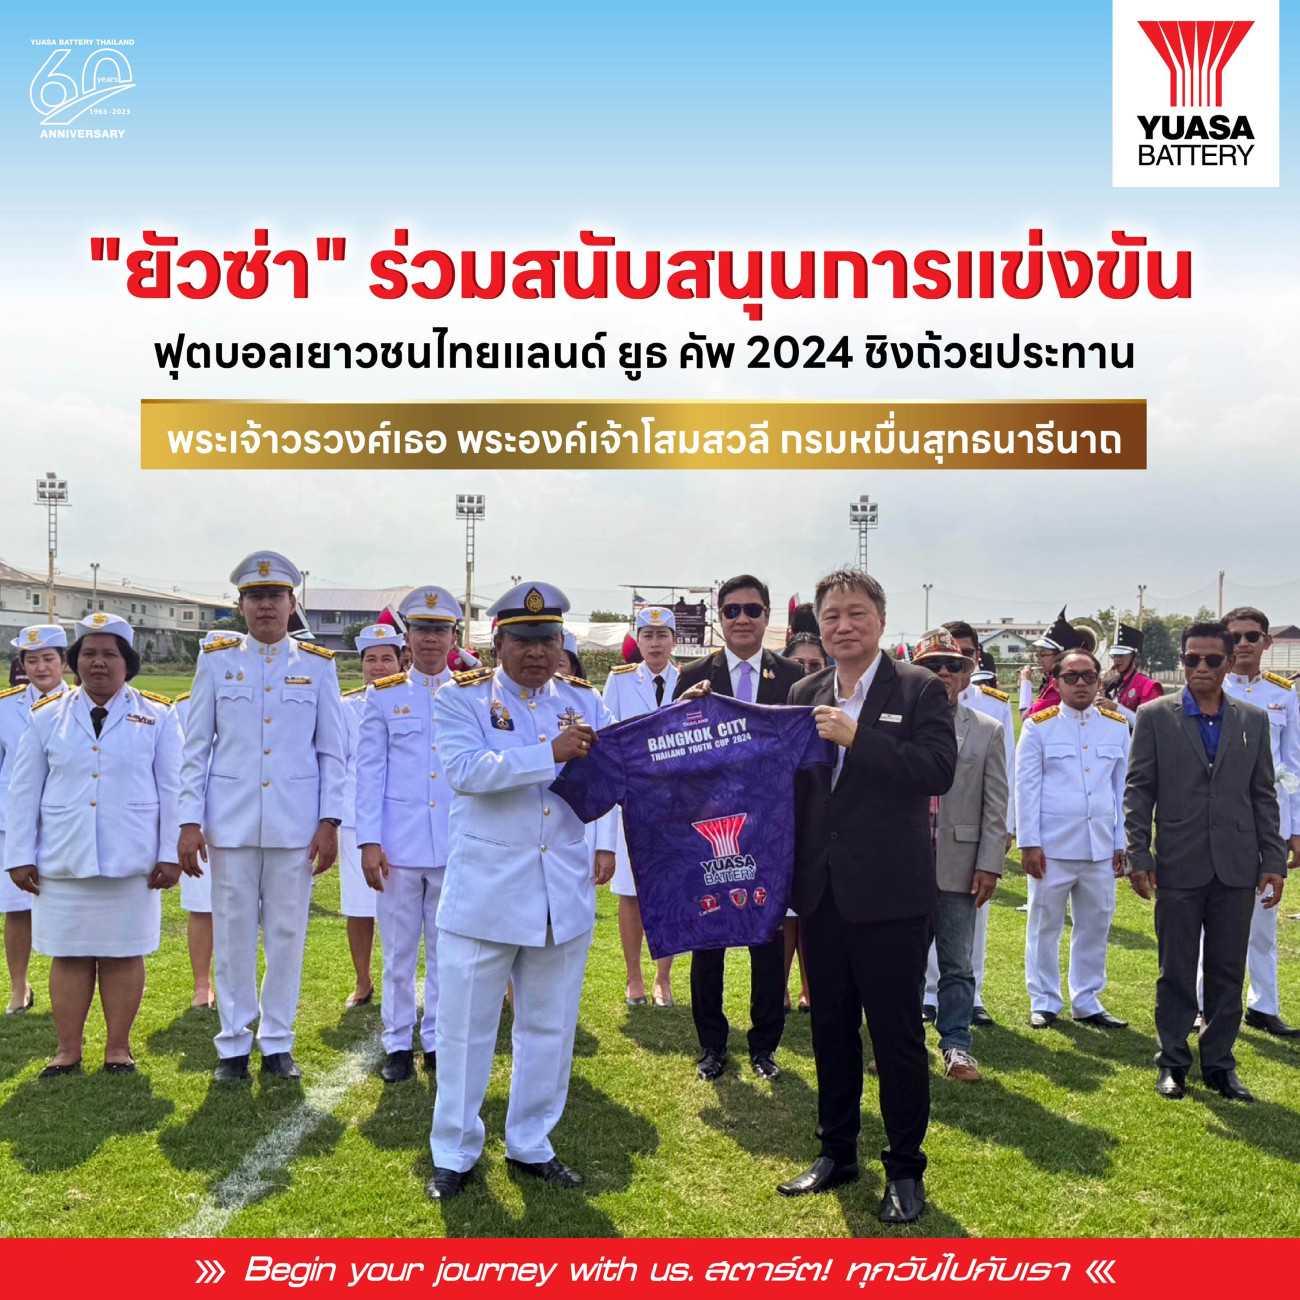 “ยัวซ่า” ร่วมสนับสนุนการแข่งขันฟุตบอลเยาวชนไทยแลนด์ ยูธ คัพ ชิงถ้วยประทาน พระเจ้าวรวงศ์เธอ พระองค์เจ้าโสมสวลีกรมหมื่นสุทธนารีนาถ